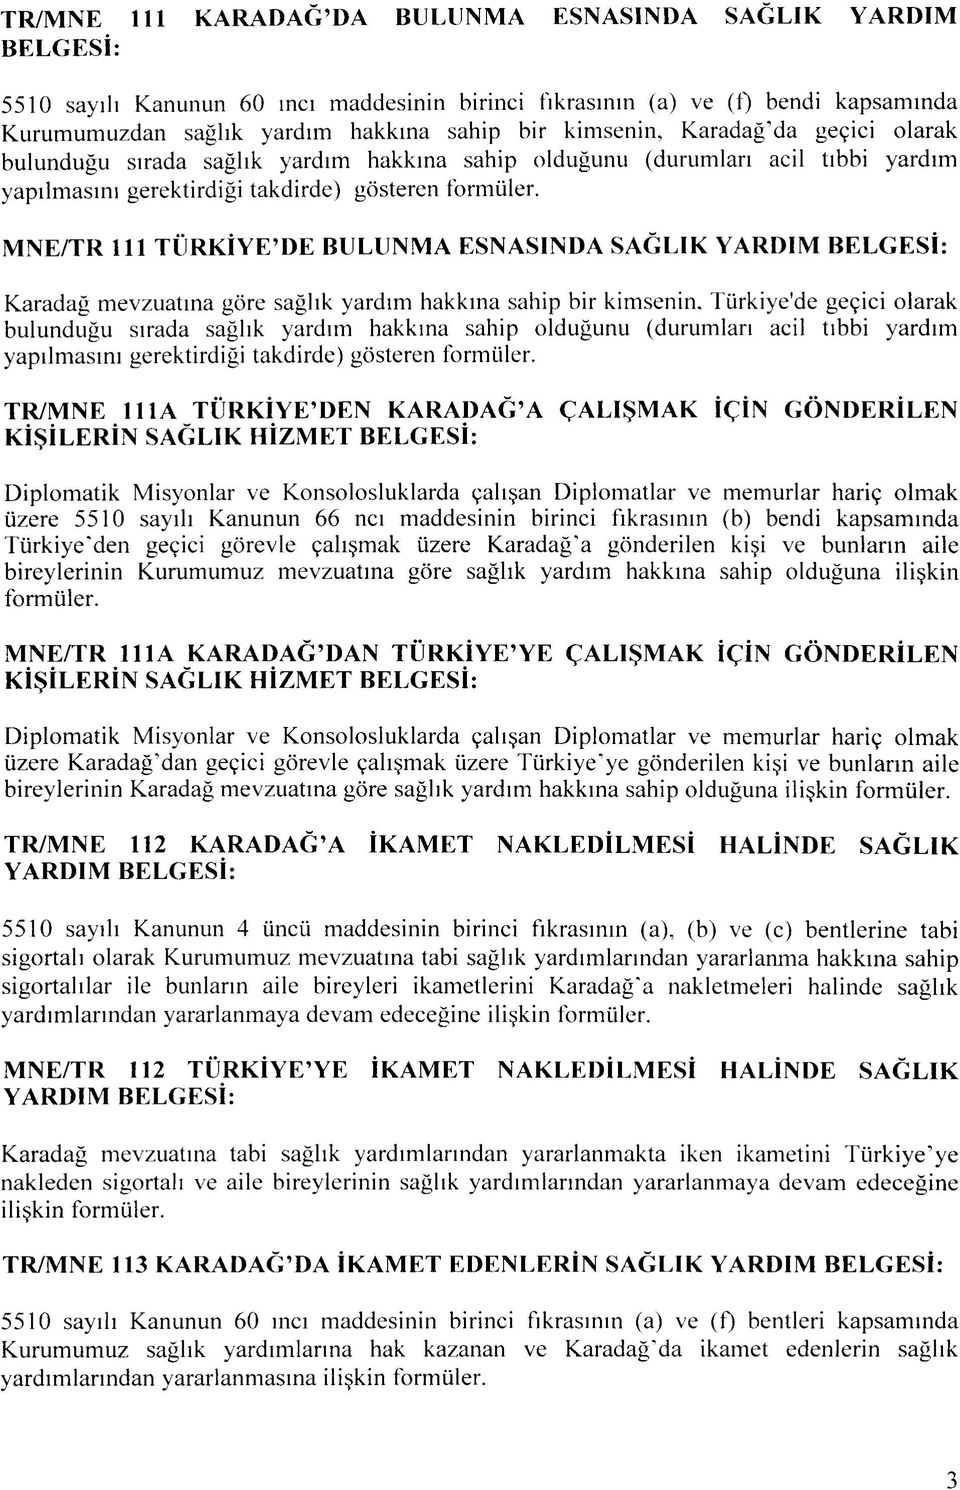 MNE/TR 111 TURKIYE'DE BULUNMA ESNASINDA SAGLIK YARDIM BELGESI: Karadag mevzuatina gore saglik yardim hakkma sahip bir kimsenin.